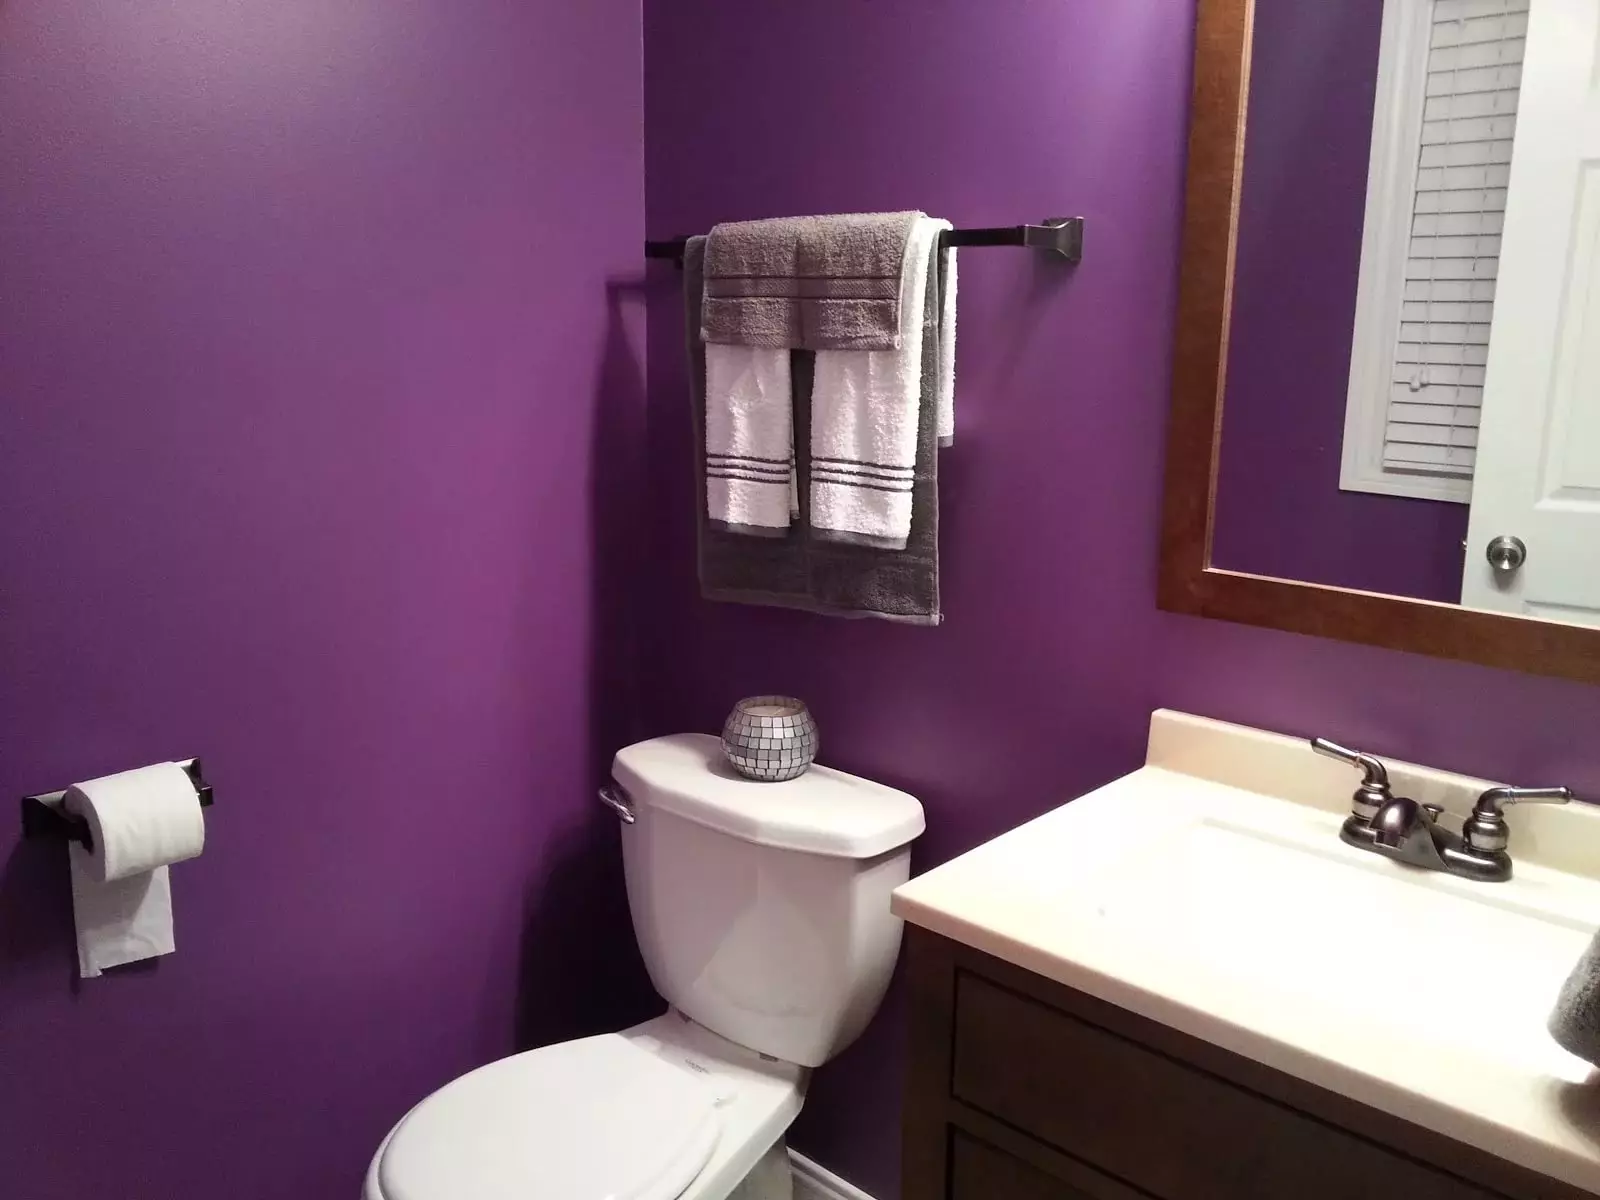 Hur man skiljer väggarna på badrummet annat än kakel? 65 Bilder: Designalternativ. Bakgrundsbilder och andra efterbehandlingsmaterial. Vad kan sys och vägg istället för kakel? 10108_49